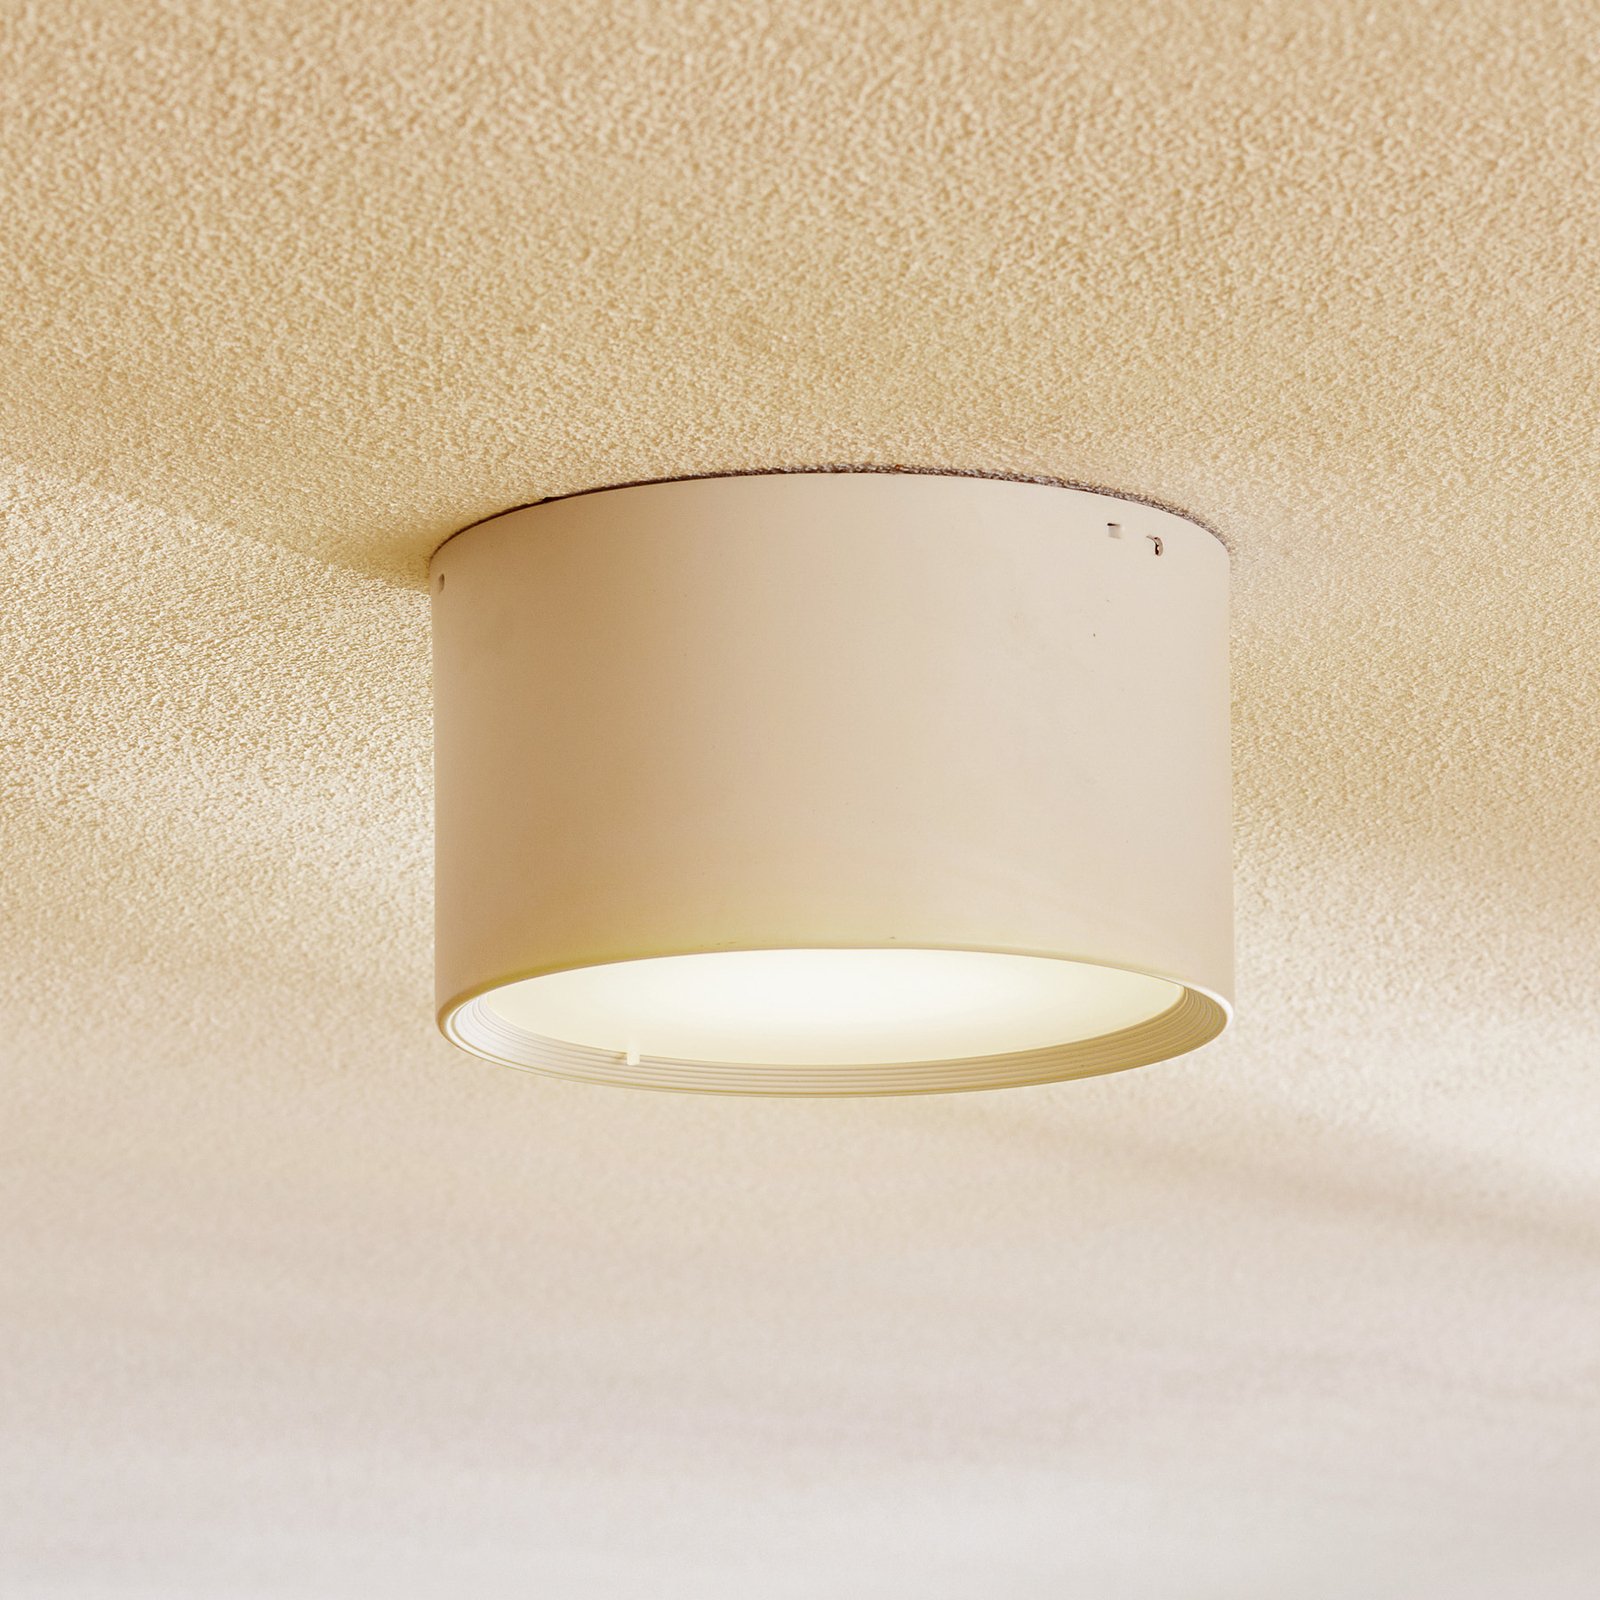 Ita LED downlight en blanco con difusor, Ø 15 cm